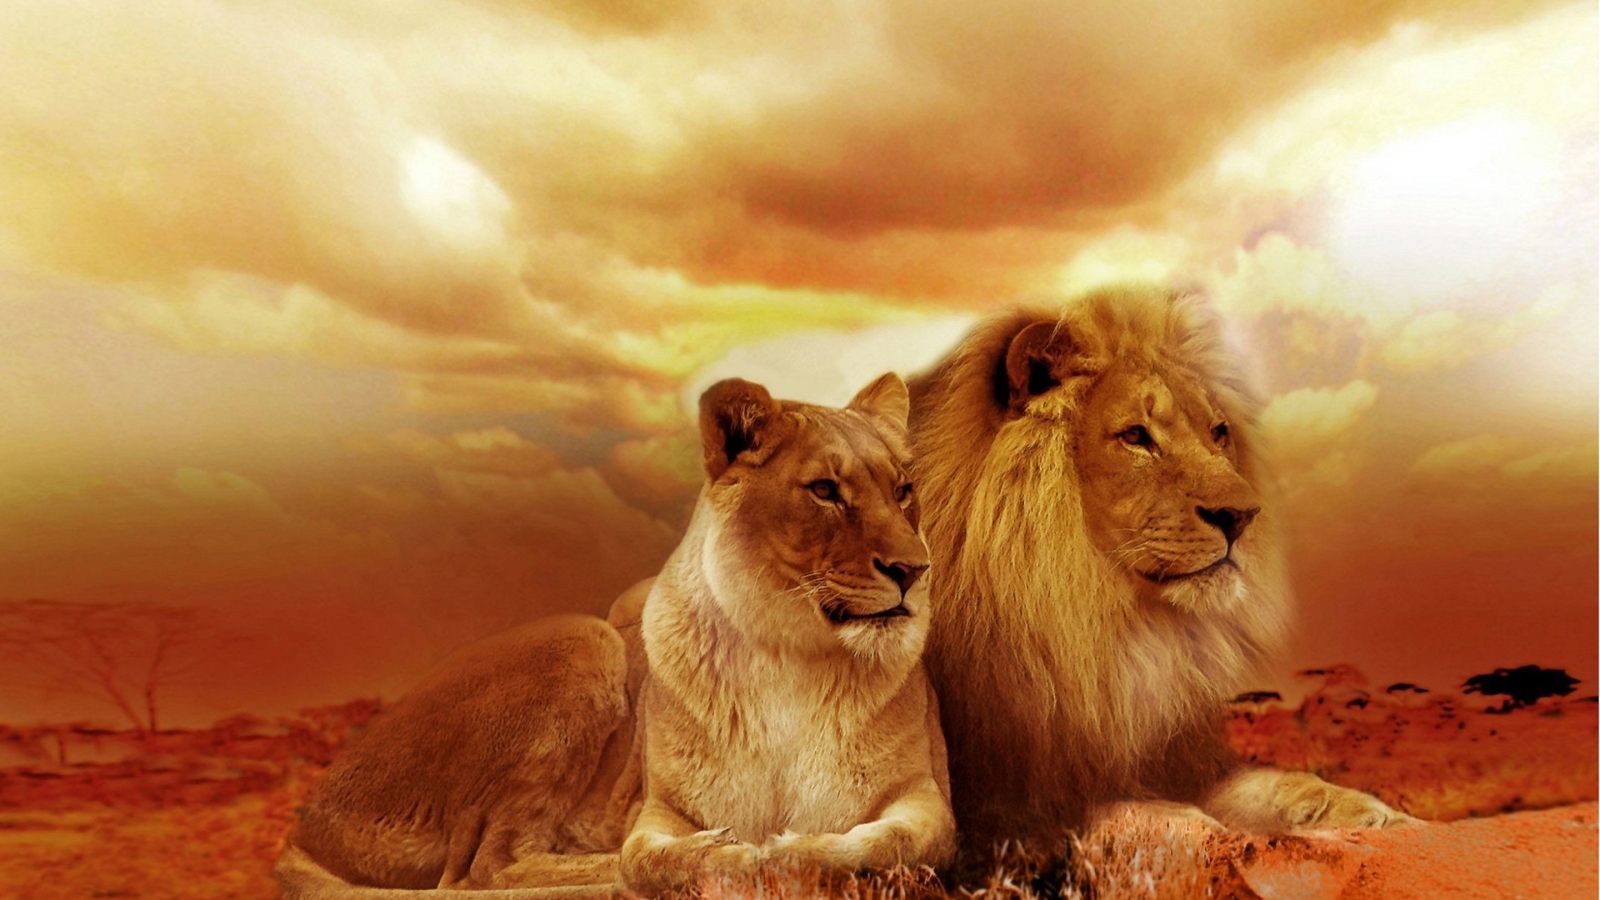 ライオンのhdの壁紙,ライオン,野生動物,マサイライオン,ネコ科,大きな猫